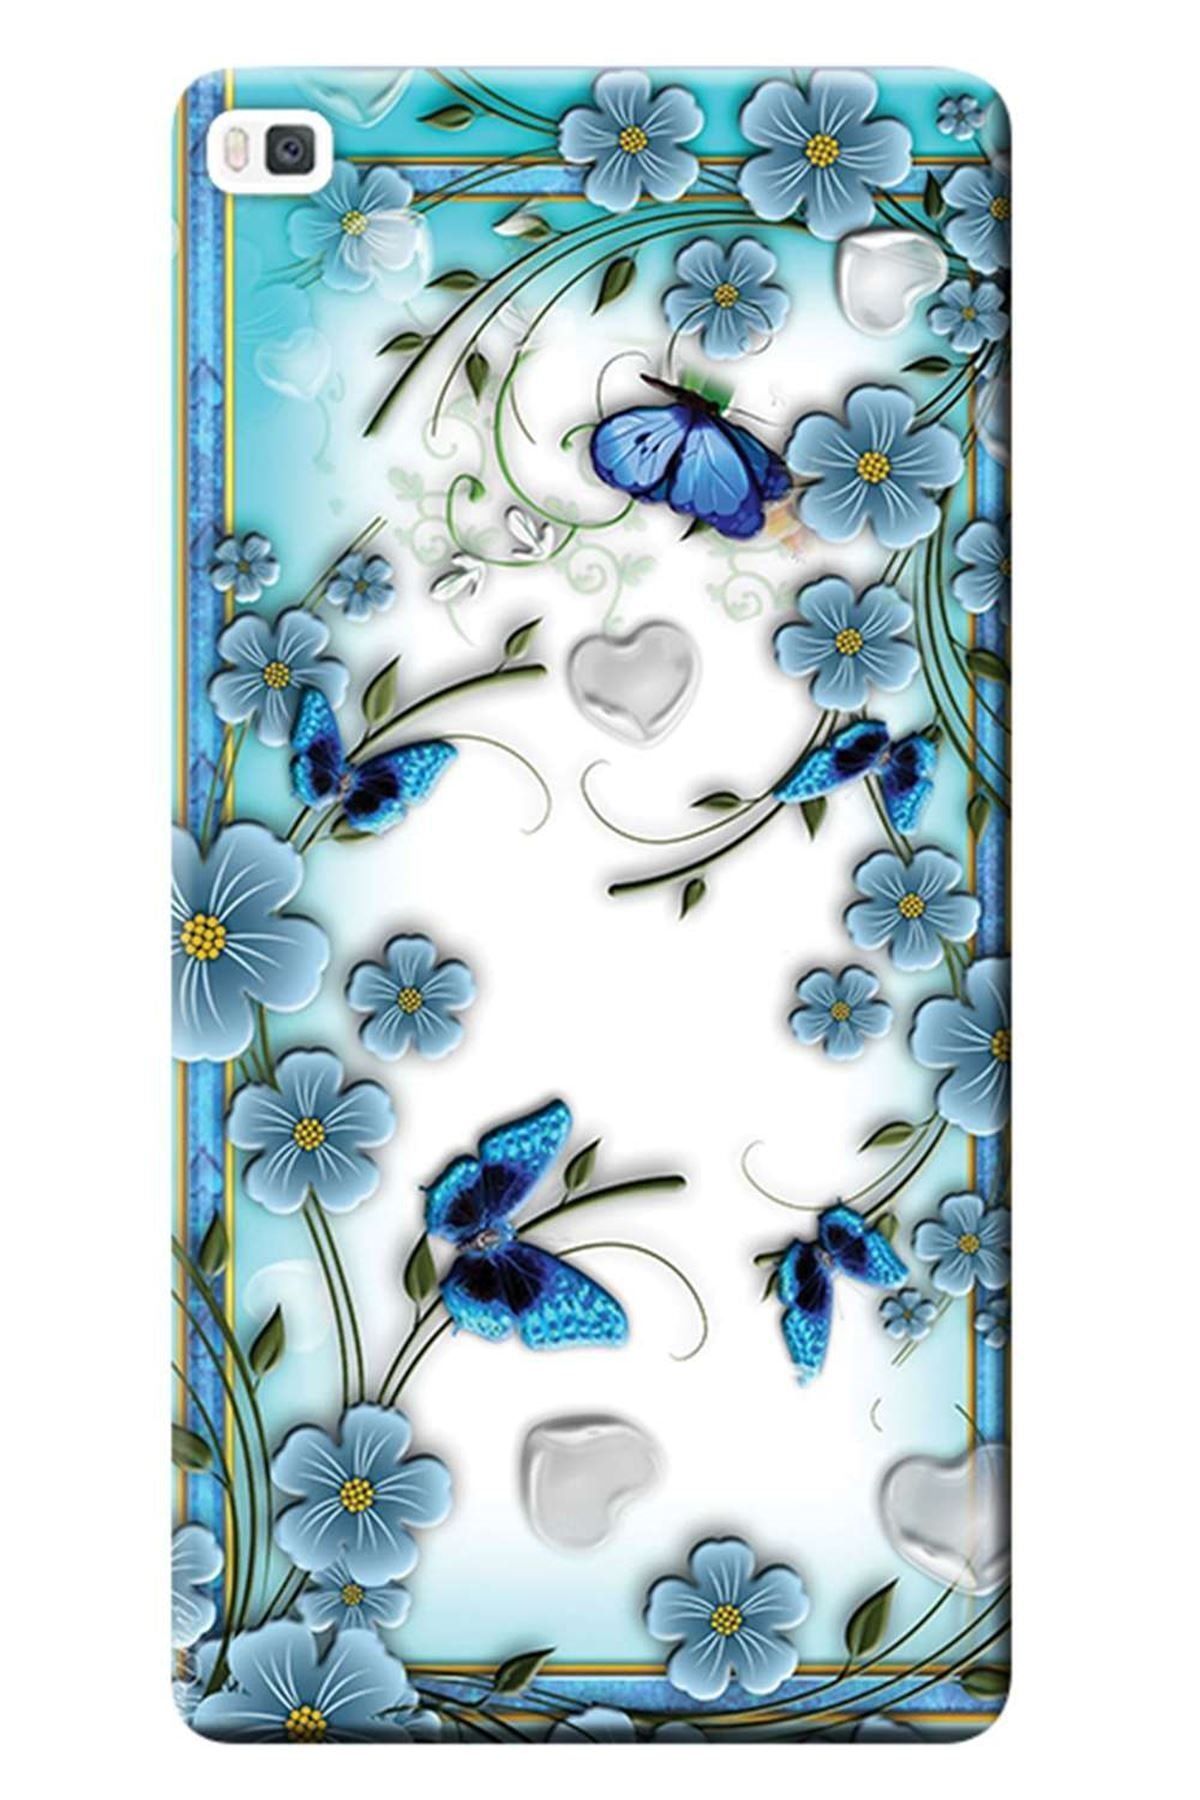 Ceppare Huawei P8 Lite Kılıf Baskılı Silikon Kapak Çiçek Ve Kelebekler Stk:547